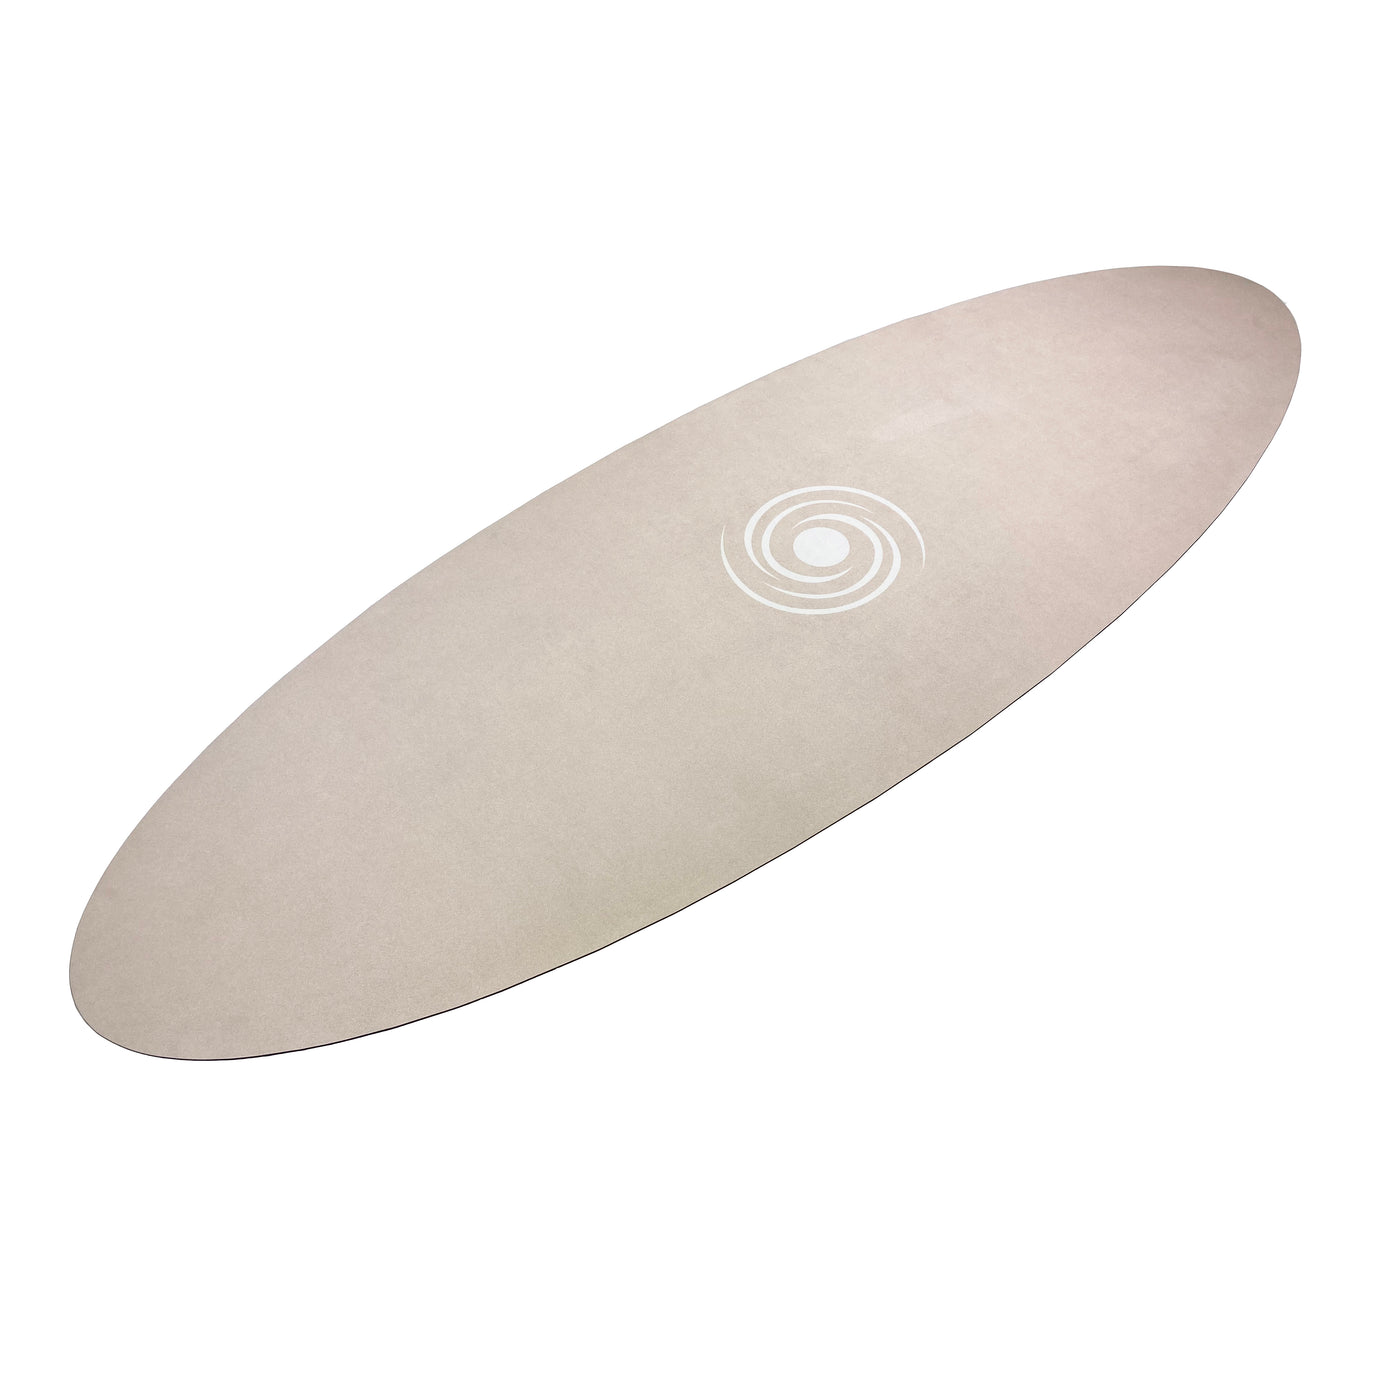 Ovale Yogamatte in Beige von Yogalaxy - Yogamatte im Surfbrettstil